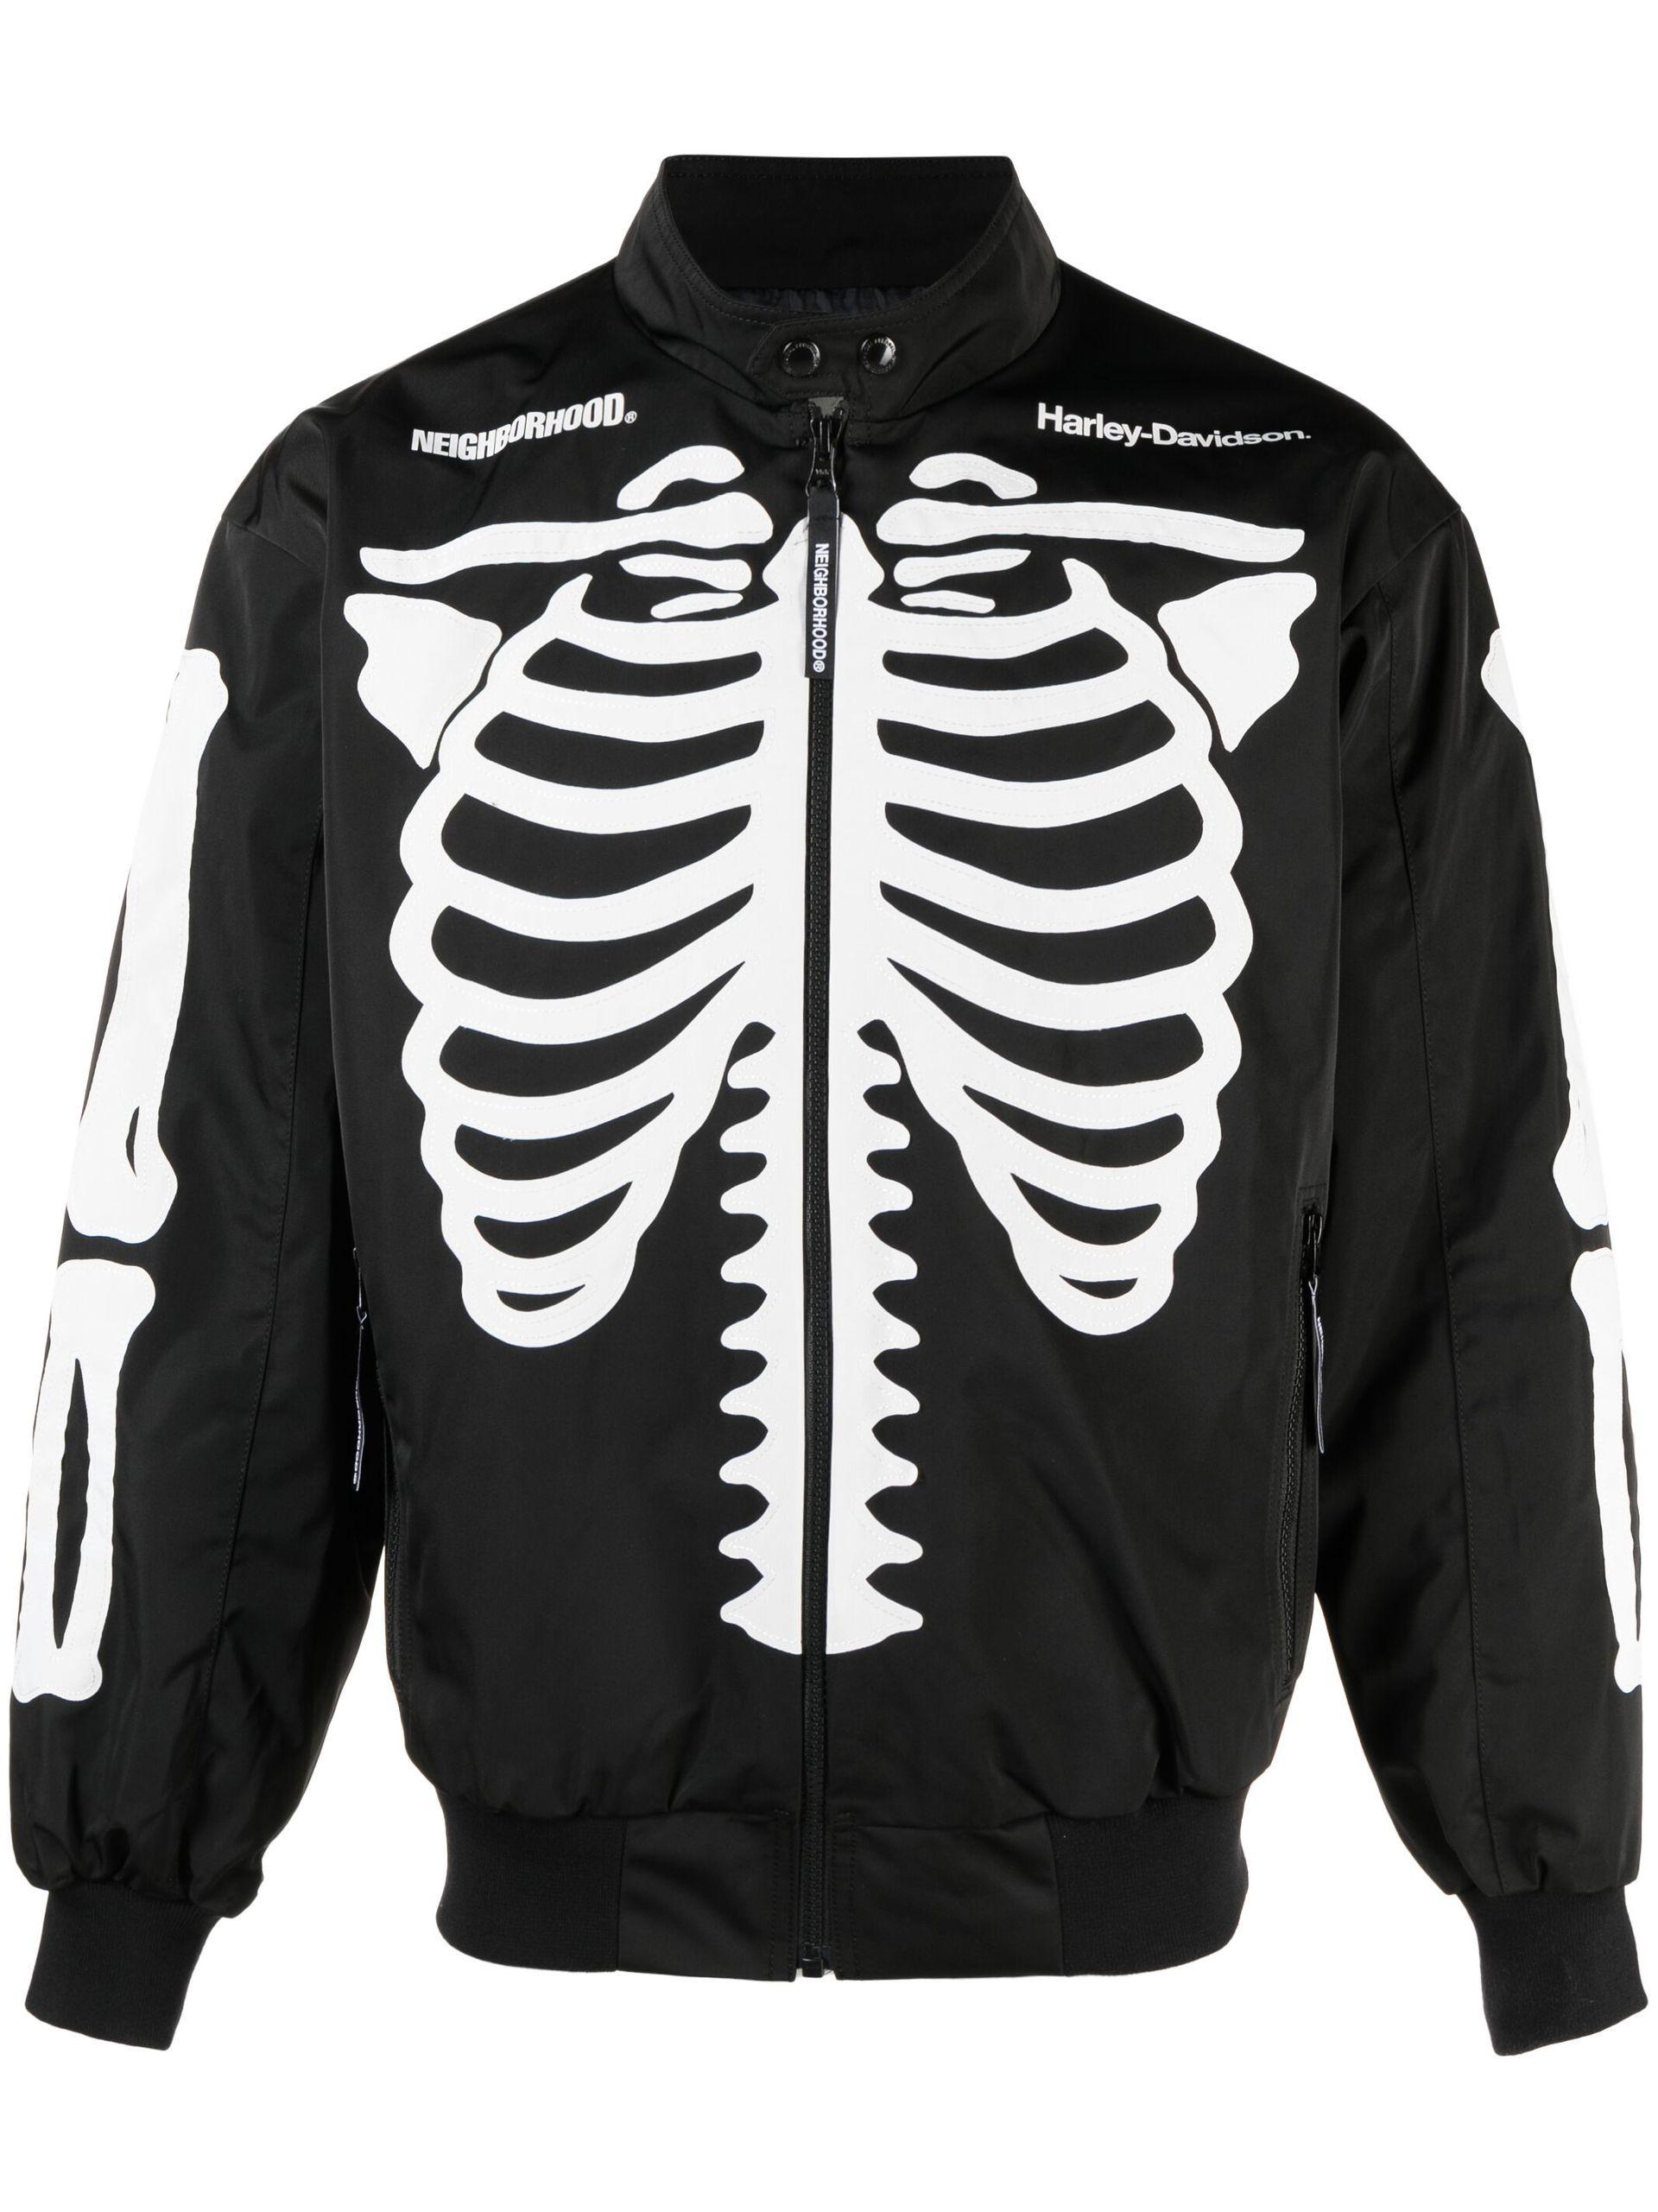 Neighborhood X Harley Davidson Skeleton Print Bomber Jacket in Black for  Men | Lyst UK